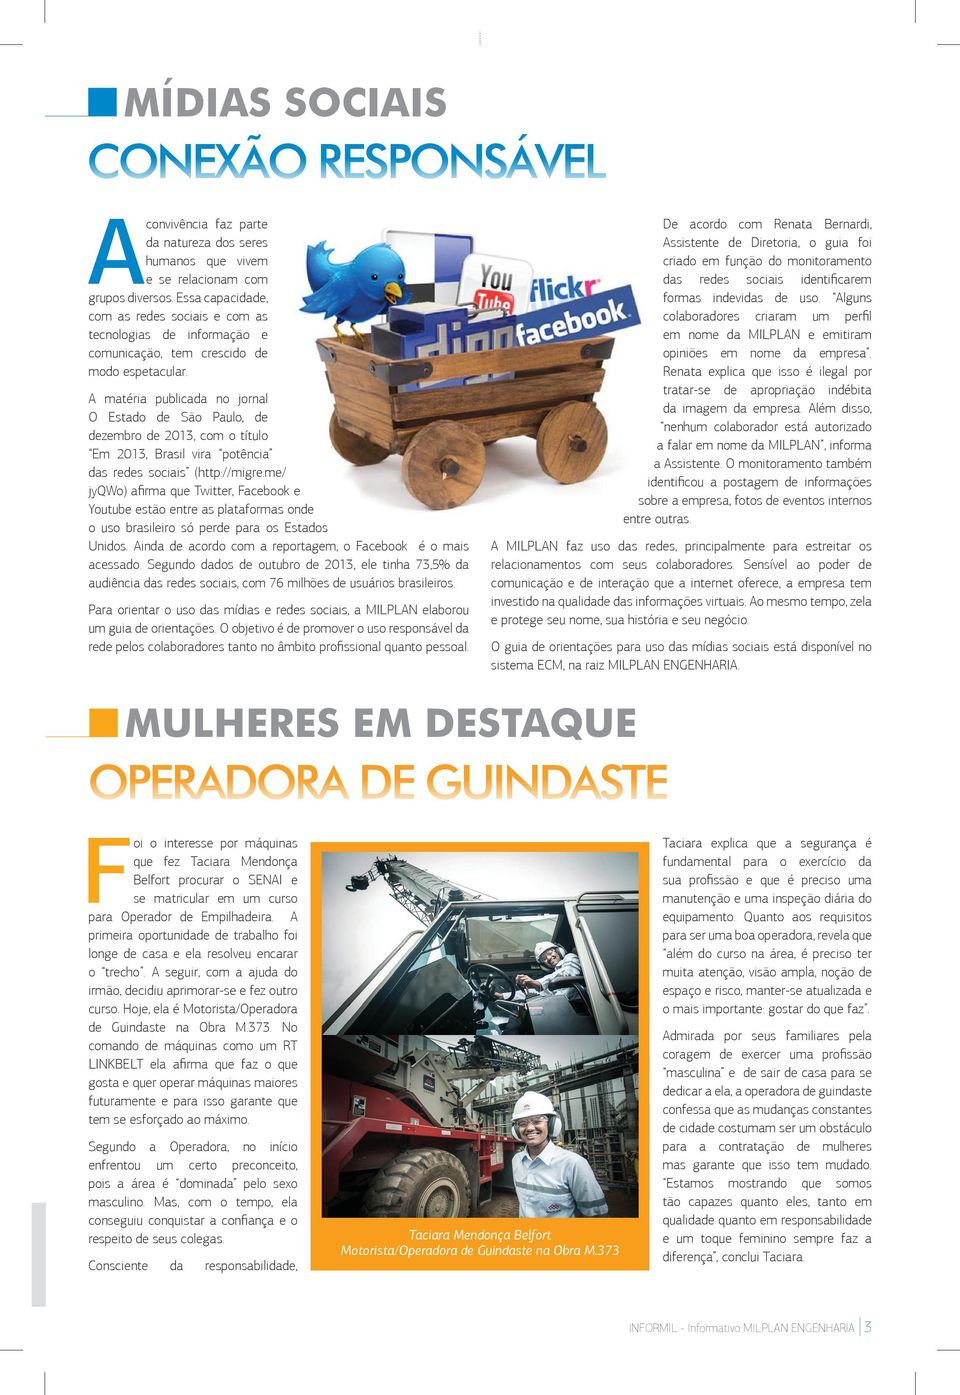 matéria publicada no jornal O Estado de São Paulo, de dezembro de 2013, com o título Em 2013, Brasil vira potência das redes sociais (http://migre.